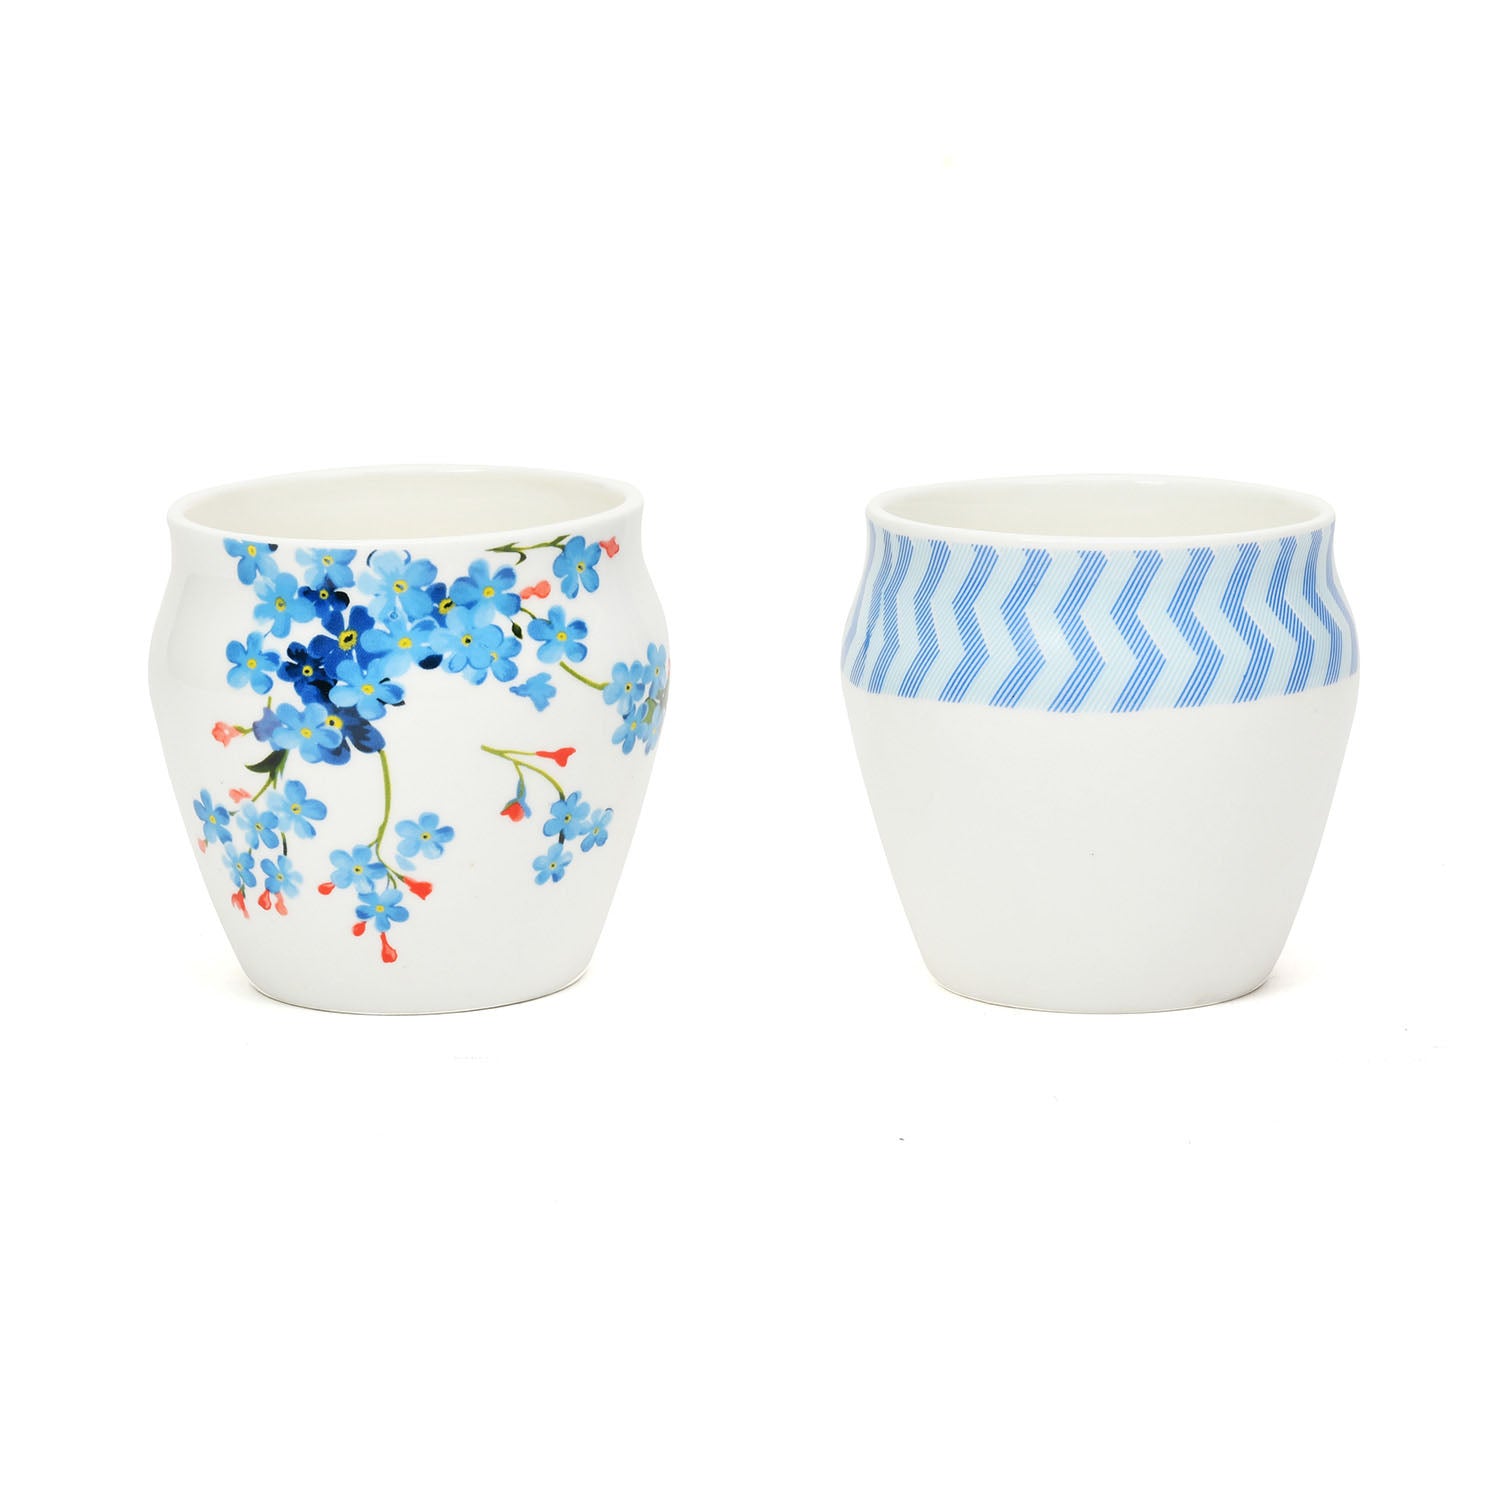 Clay Craft Ceramic 240 ml Floral Kullar Set of 4 (Blue & White)